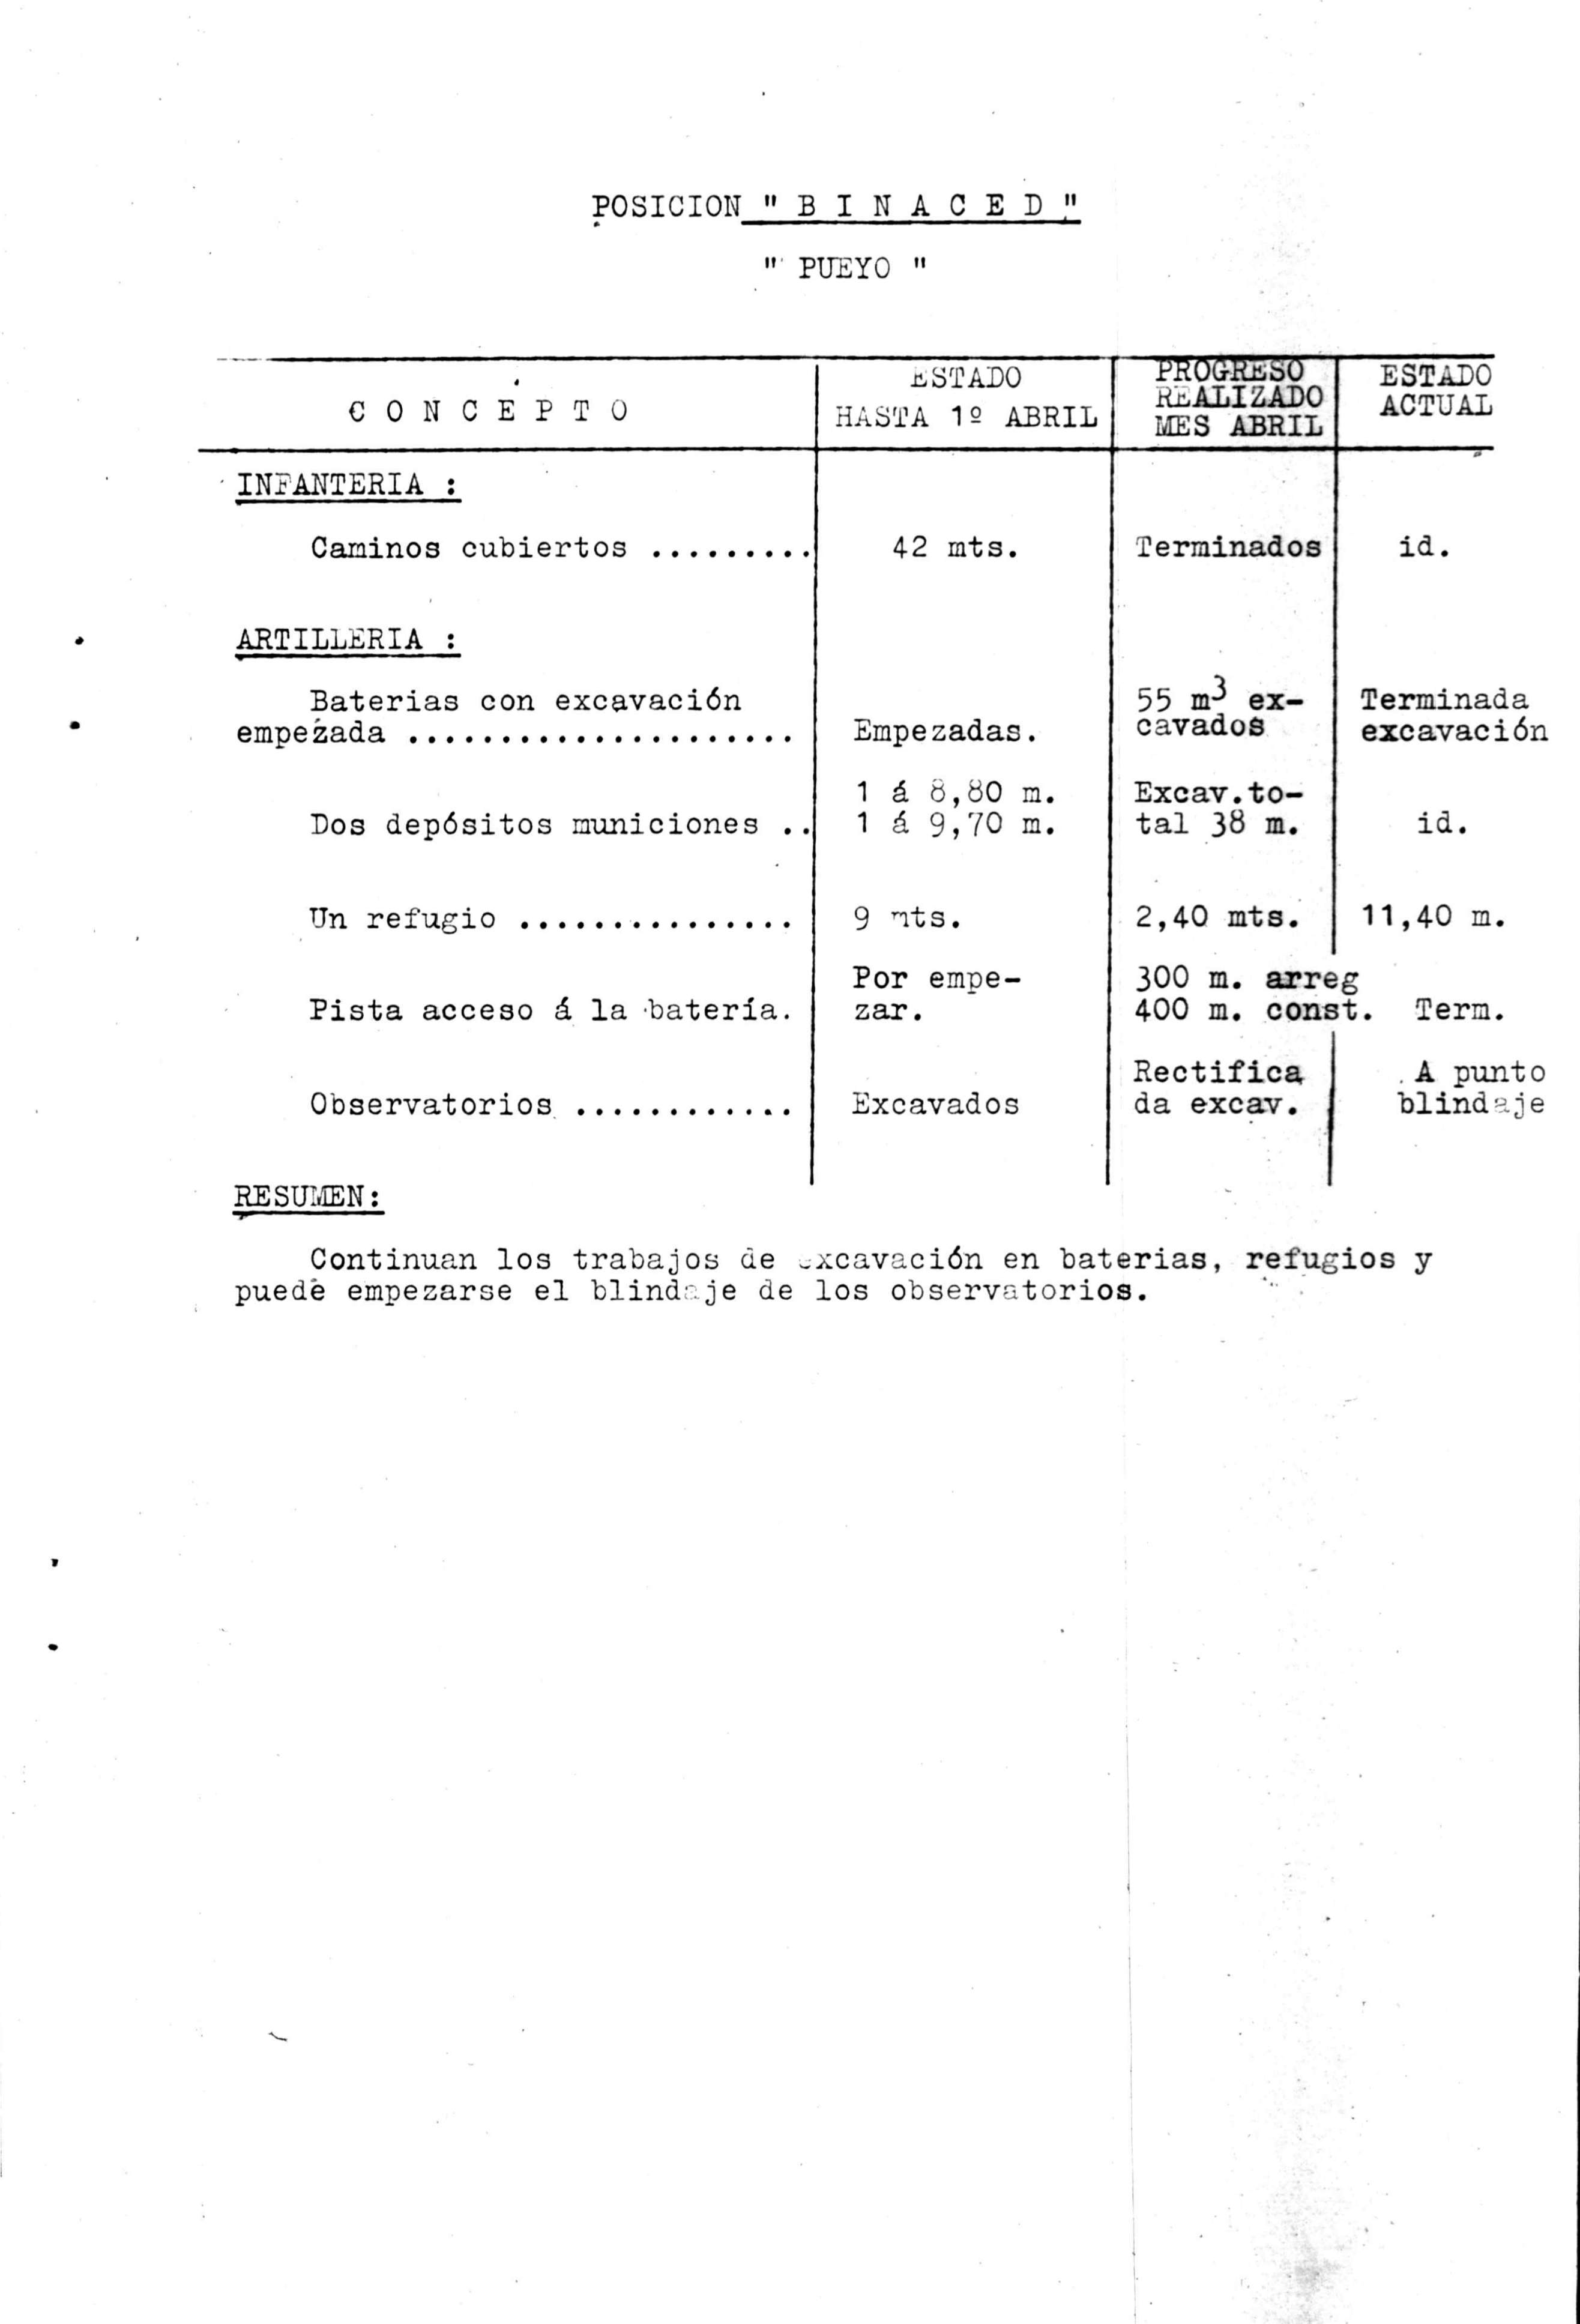 Resumen de las obras realizadas en el mes de abril de 1937 en las posiciones de Binaced (El Pueyo)